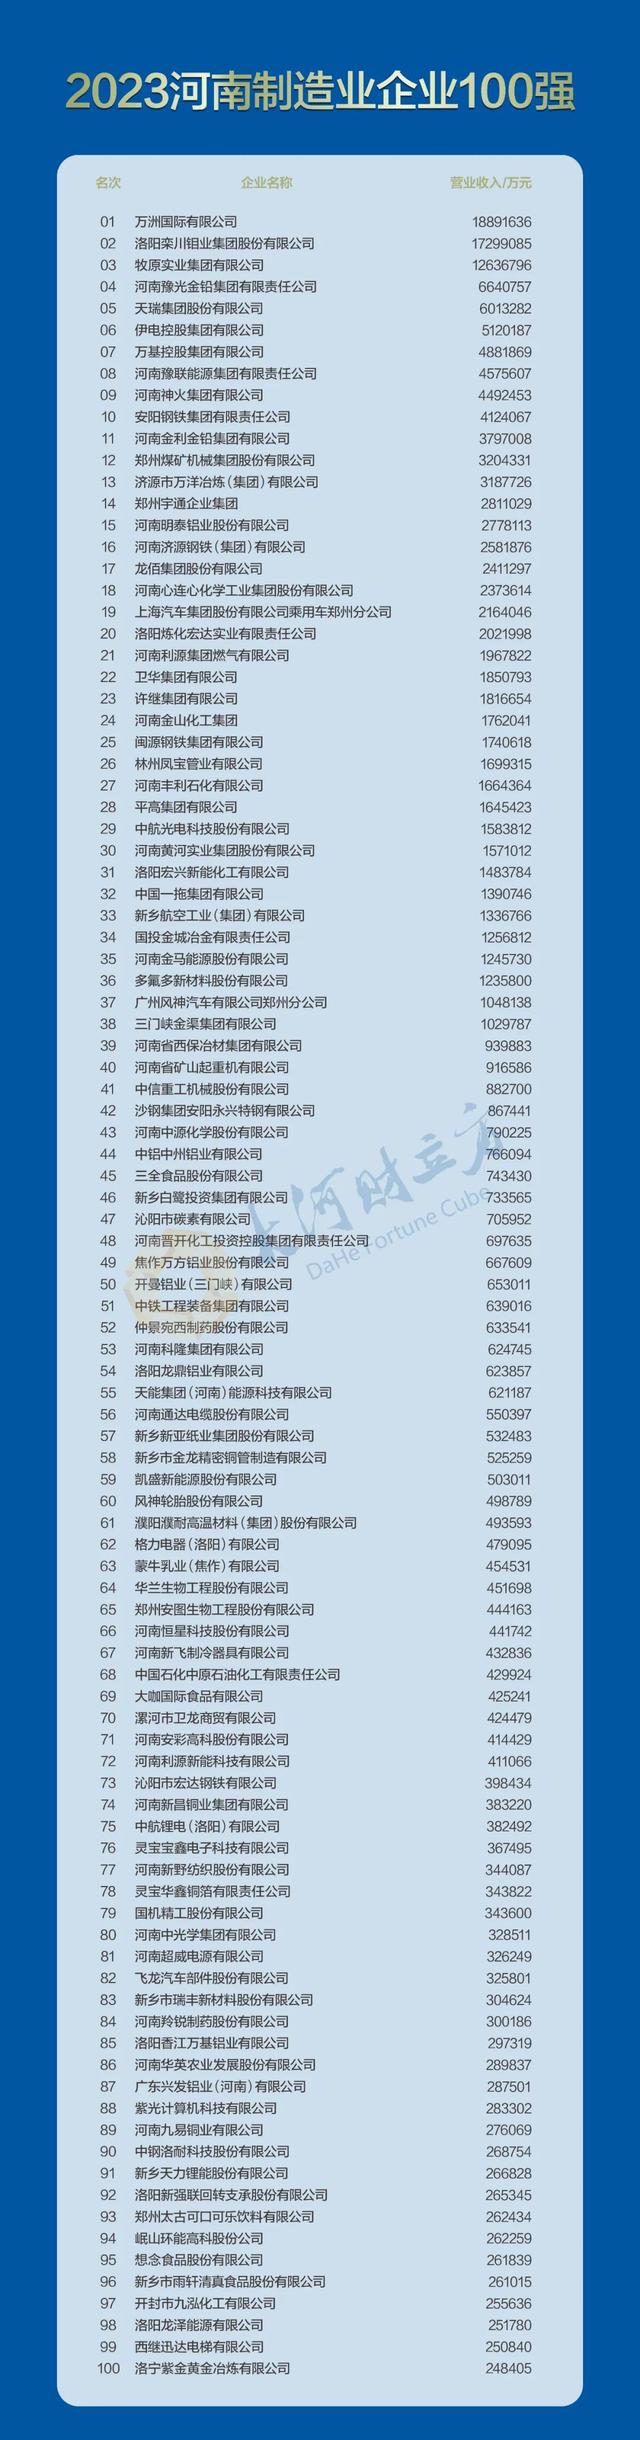 2023河南企业100强名单来了